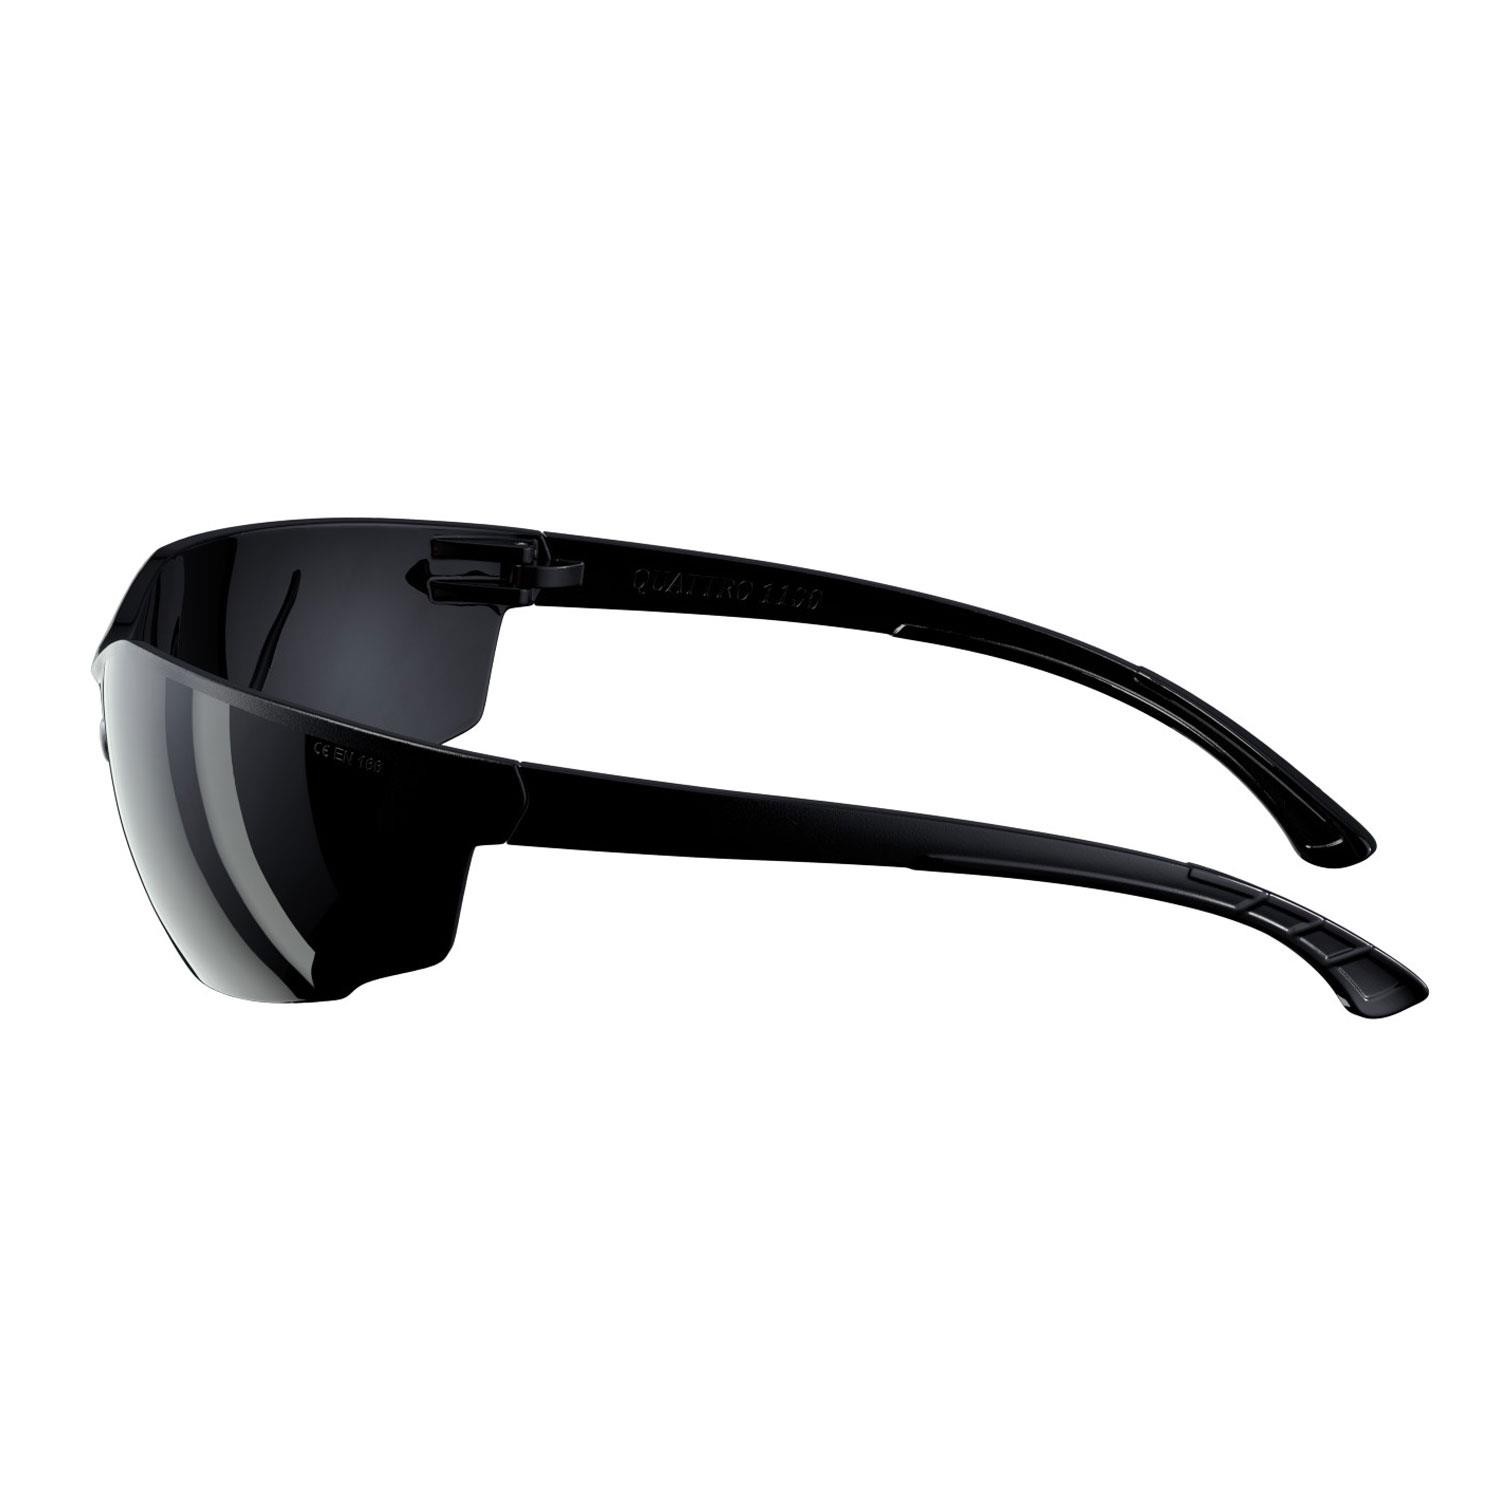 İş Güvenlik Gözlüğü UV Koruyucu Silikonlu Kaynak Gözlük S1100 Siyah